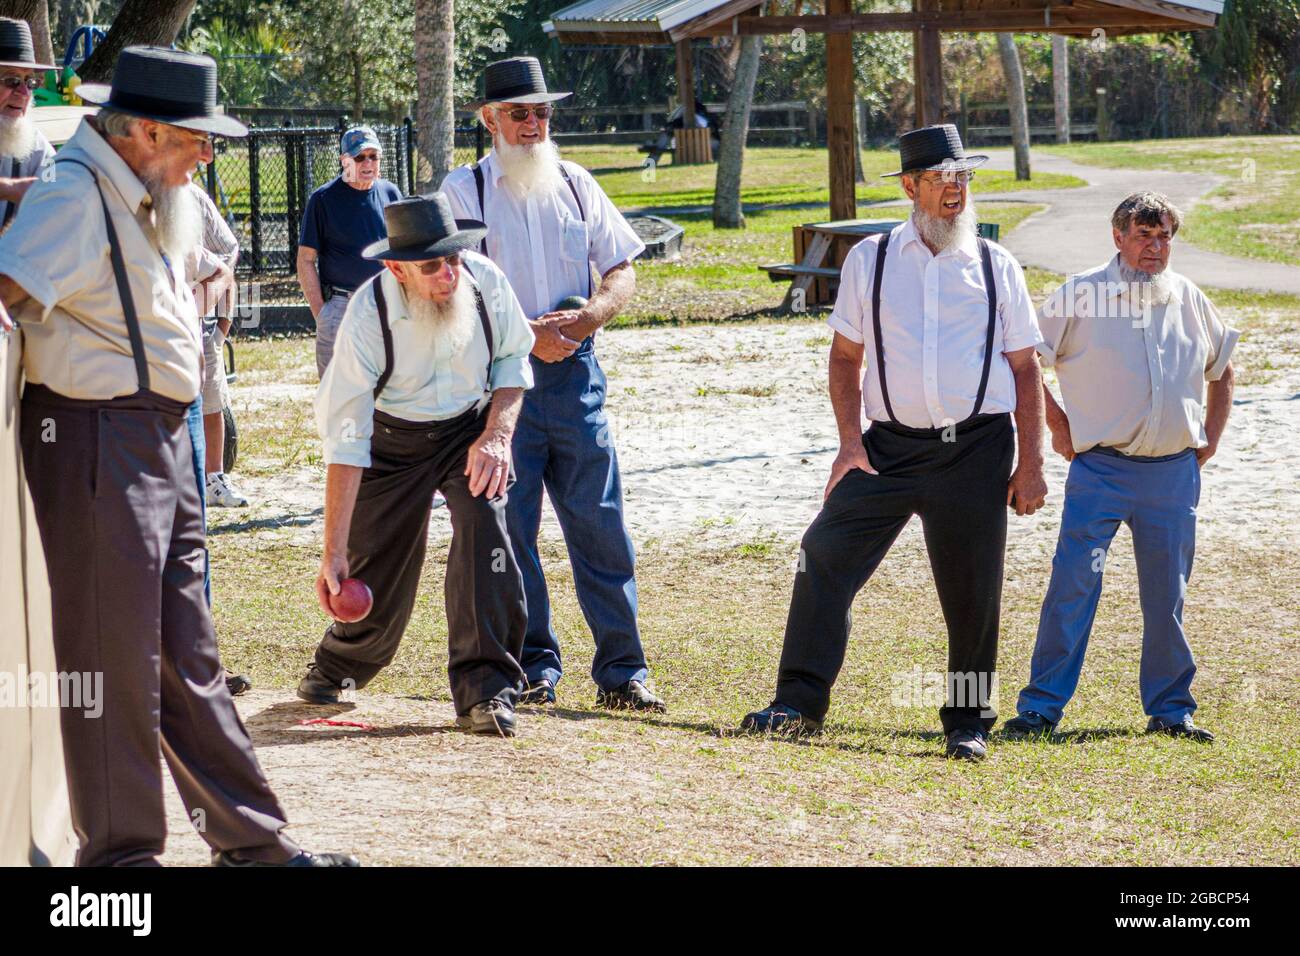 Sarasota Floride, Pinecraft Amish Mennonite groupe, communauté hiver retraite Pinecraft Park, adultes hommes amis, jouer bocce jeu de boule traditionnel clothi Banque D'Images